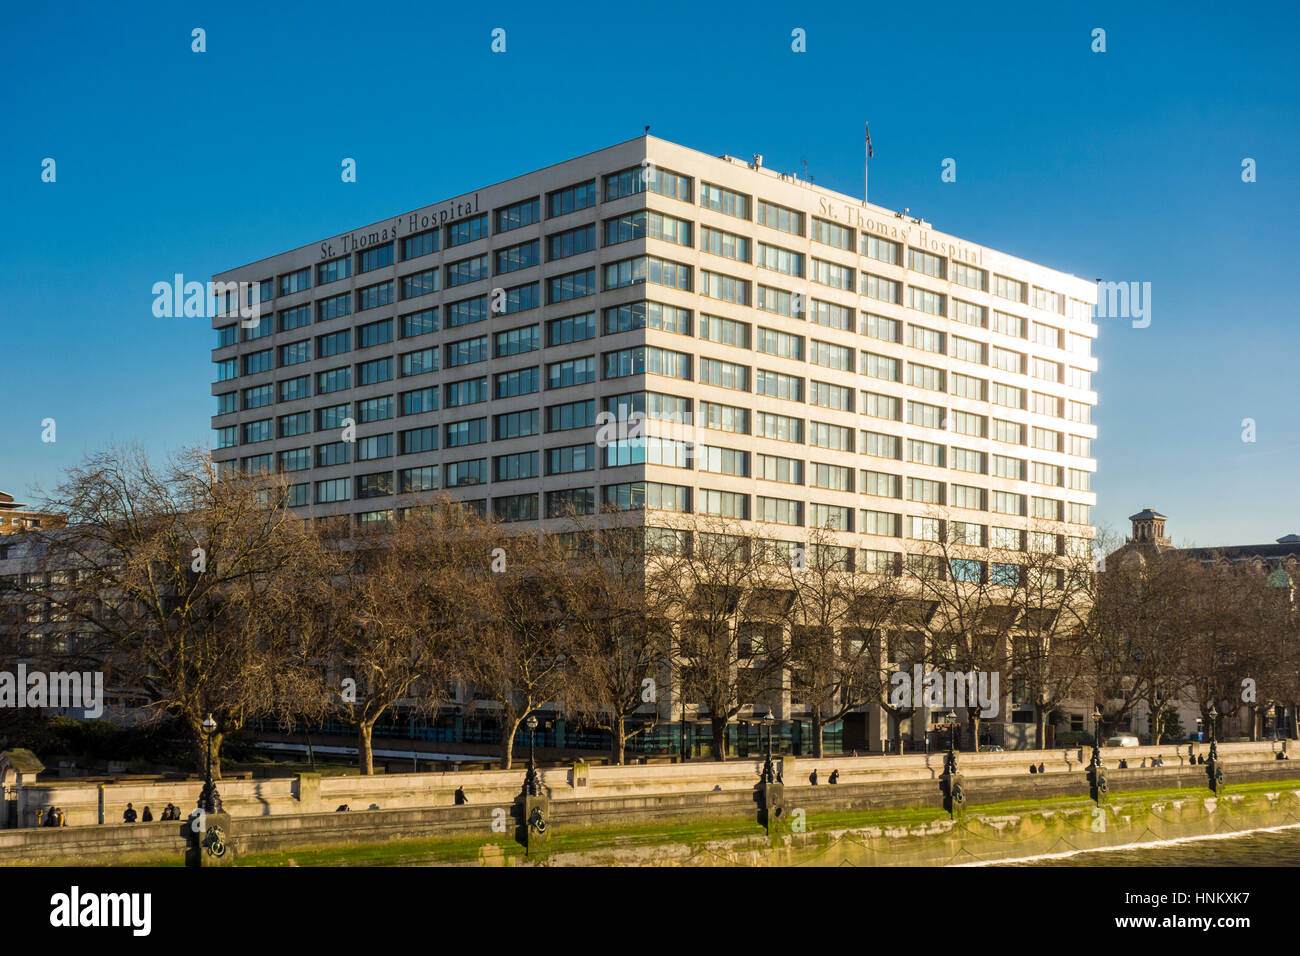 La lumière du soleil frappant le côté de St Thomas' Hospital, Londres, Royaume-Uni Banque D'Images